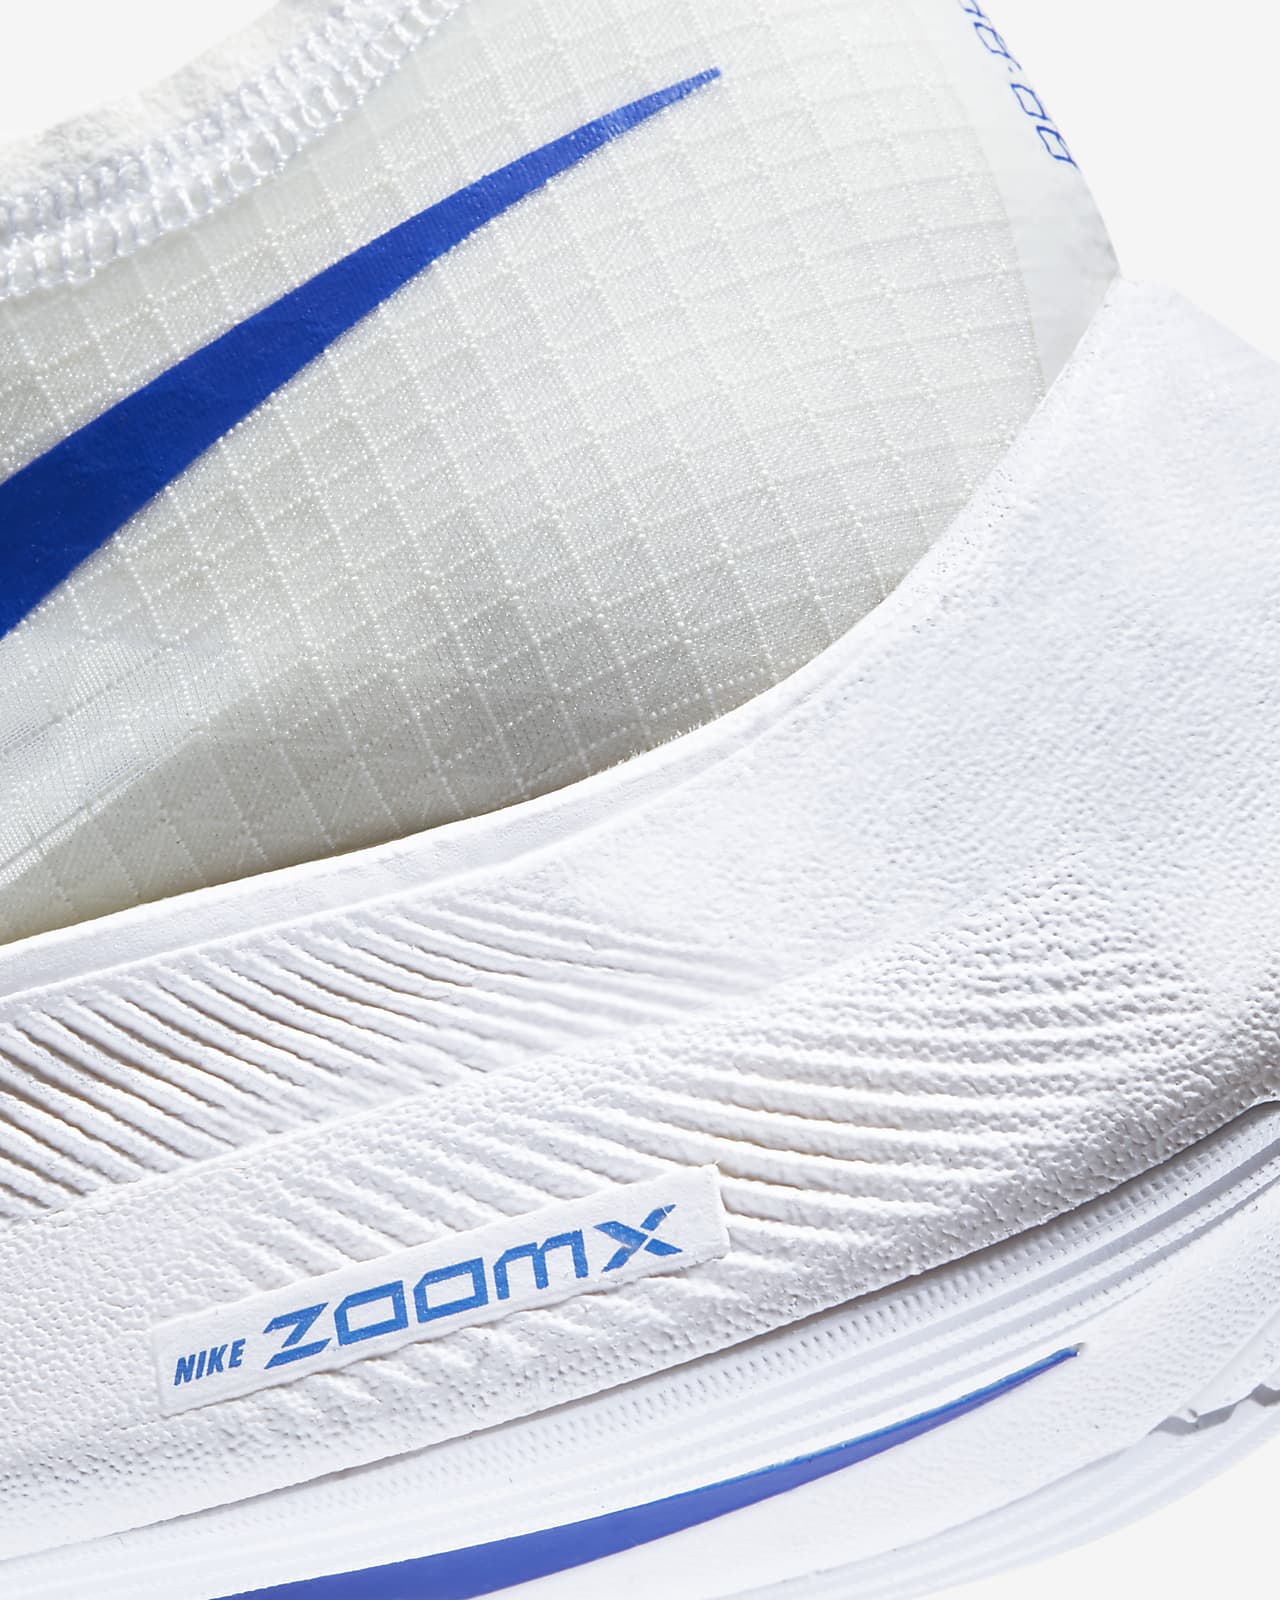 zoomx vaporfly next price philippines